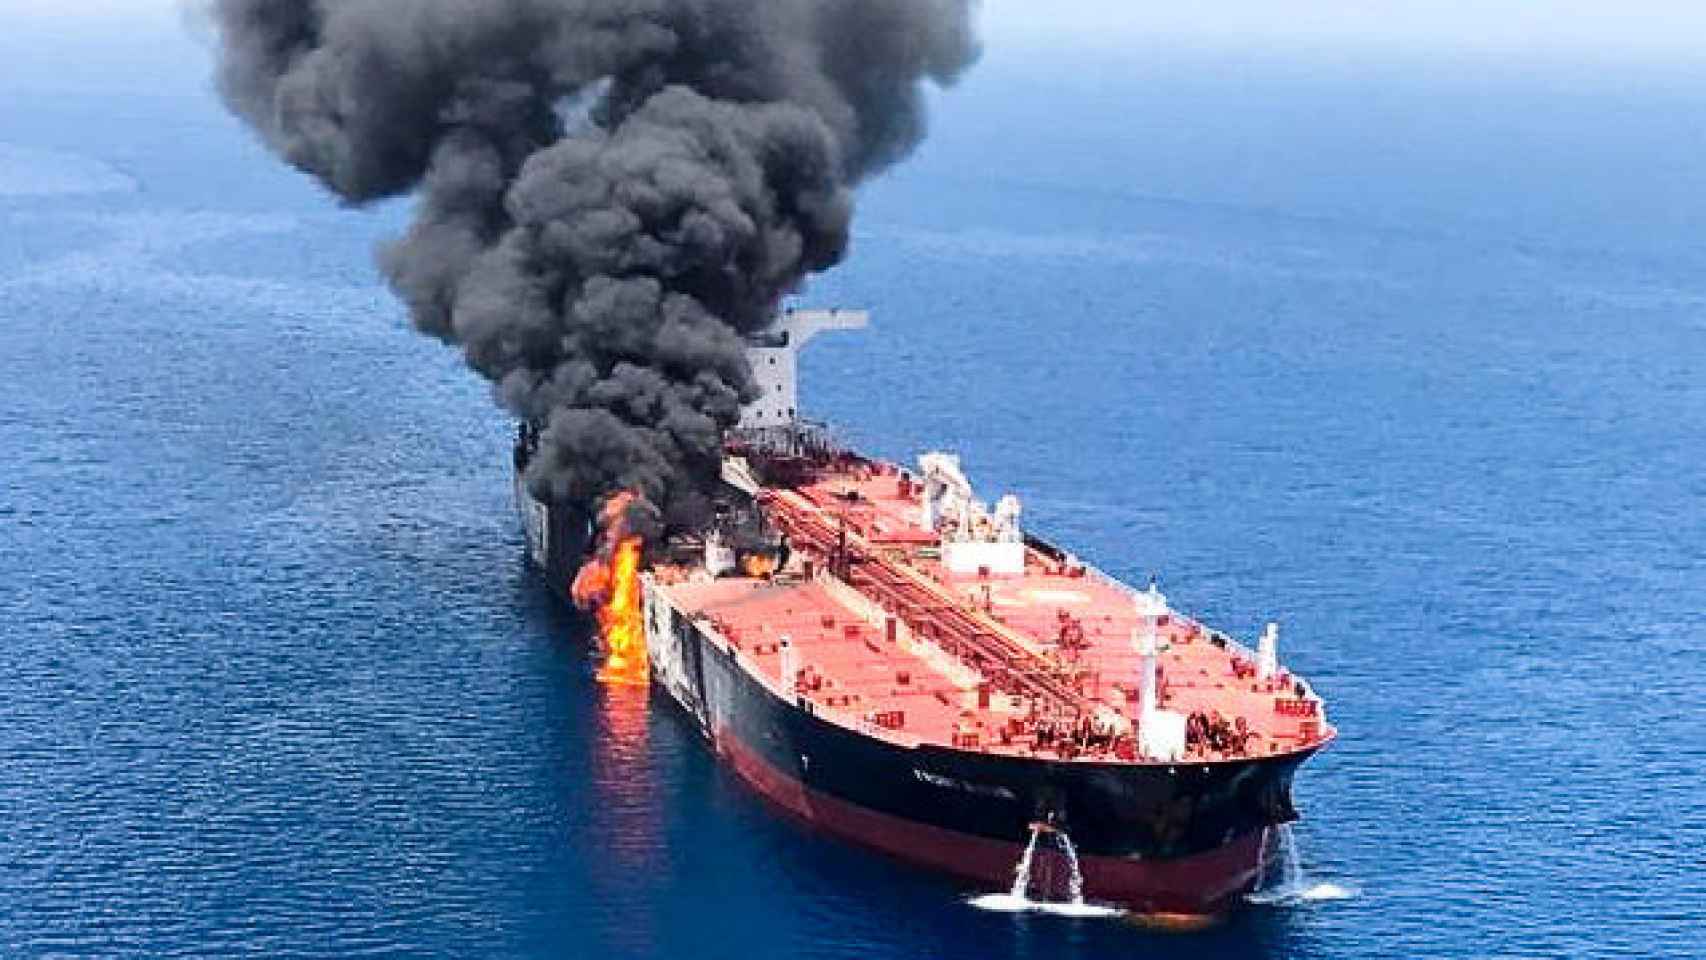 Uno de los petroleros atacados, totalmente en llamas